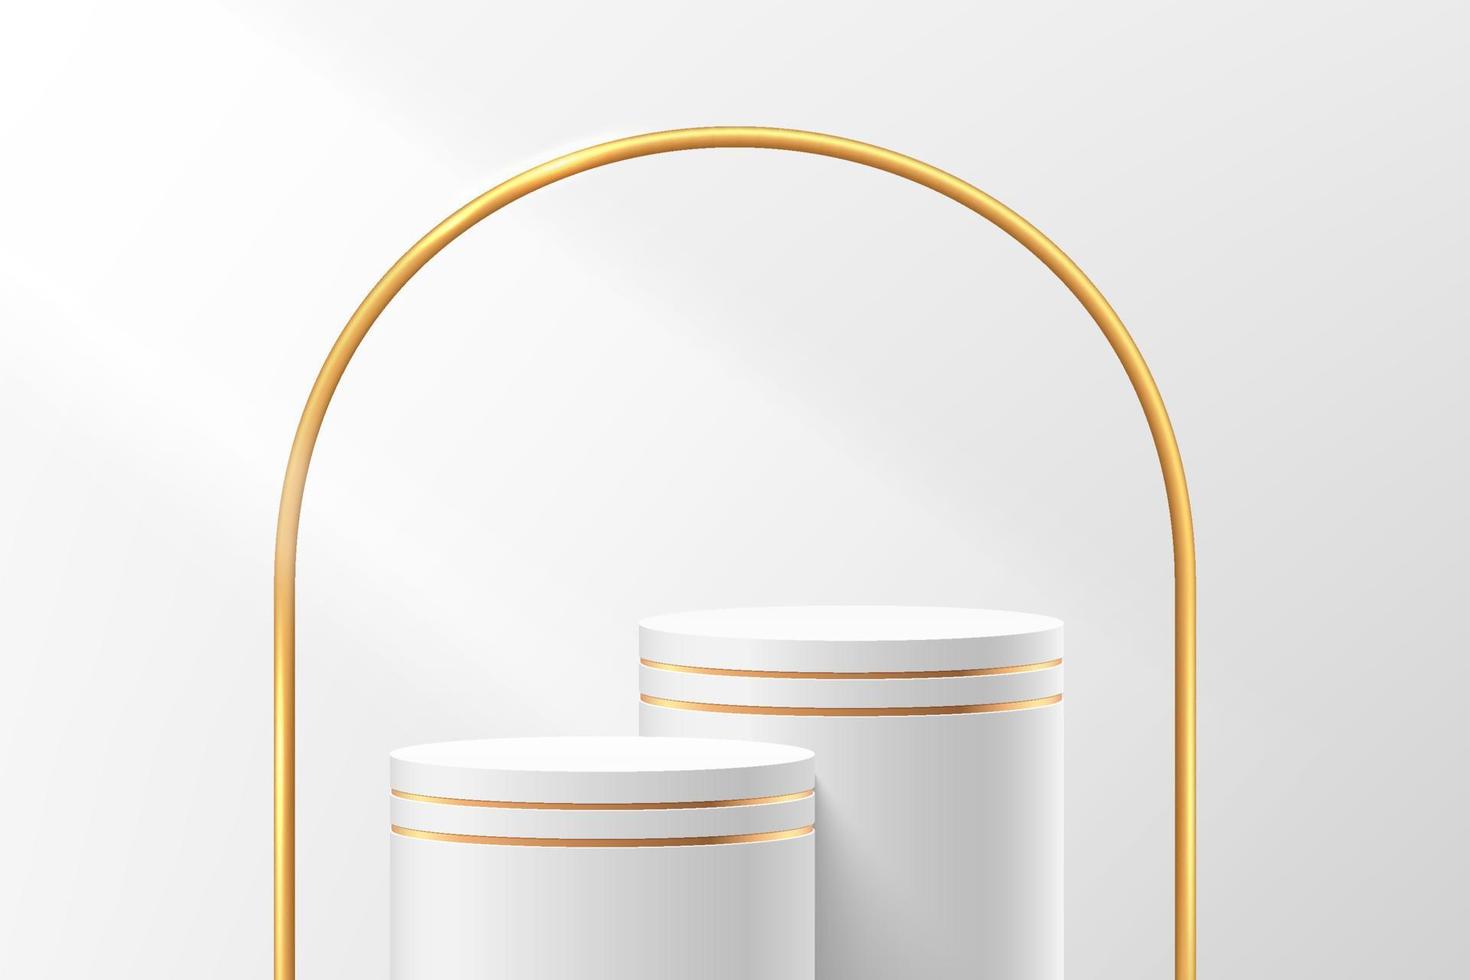 abstrakt 3d vit och guld cylinder piedestal eller stå podium med gyllene valv bakgrund. lyxig vit minimal väggscen för produktpresentation. vektor geometrisk rendering plattform design.